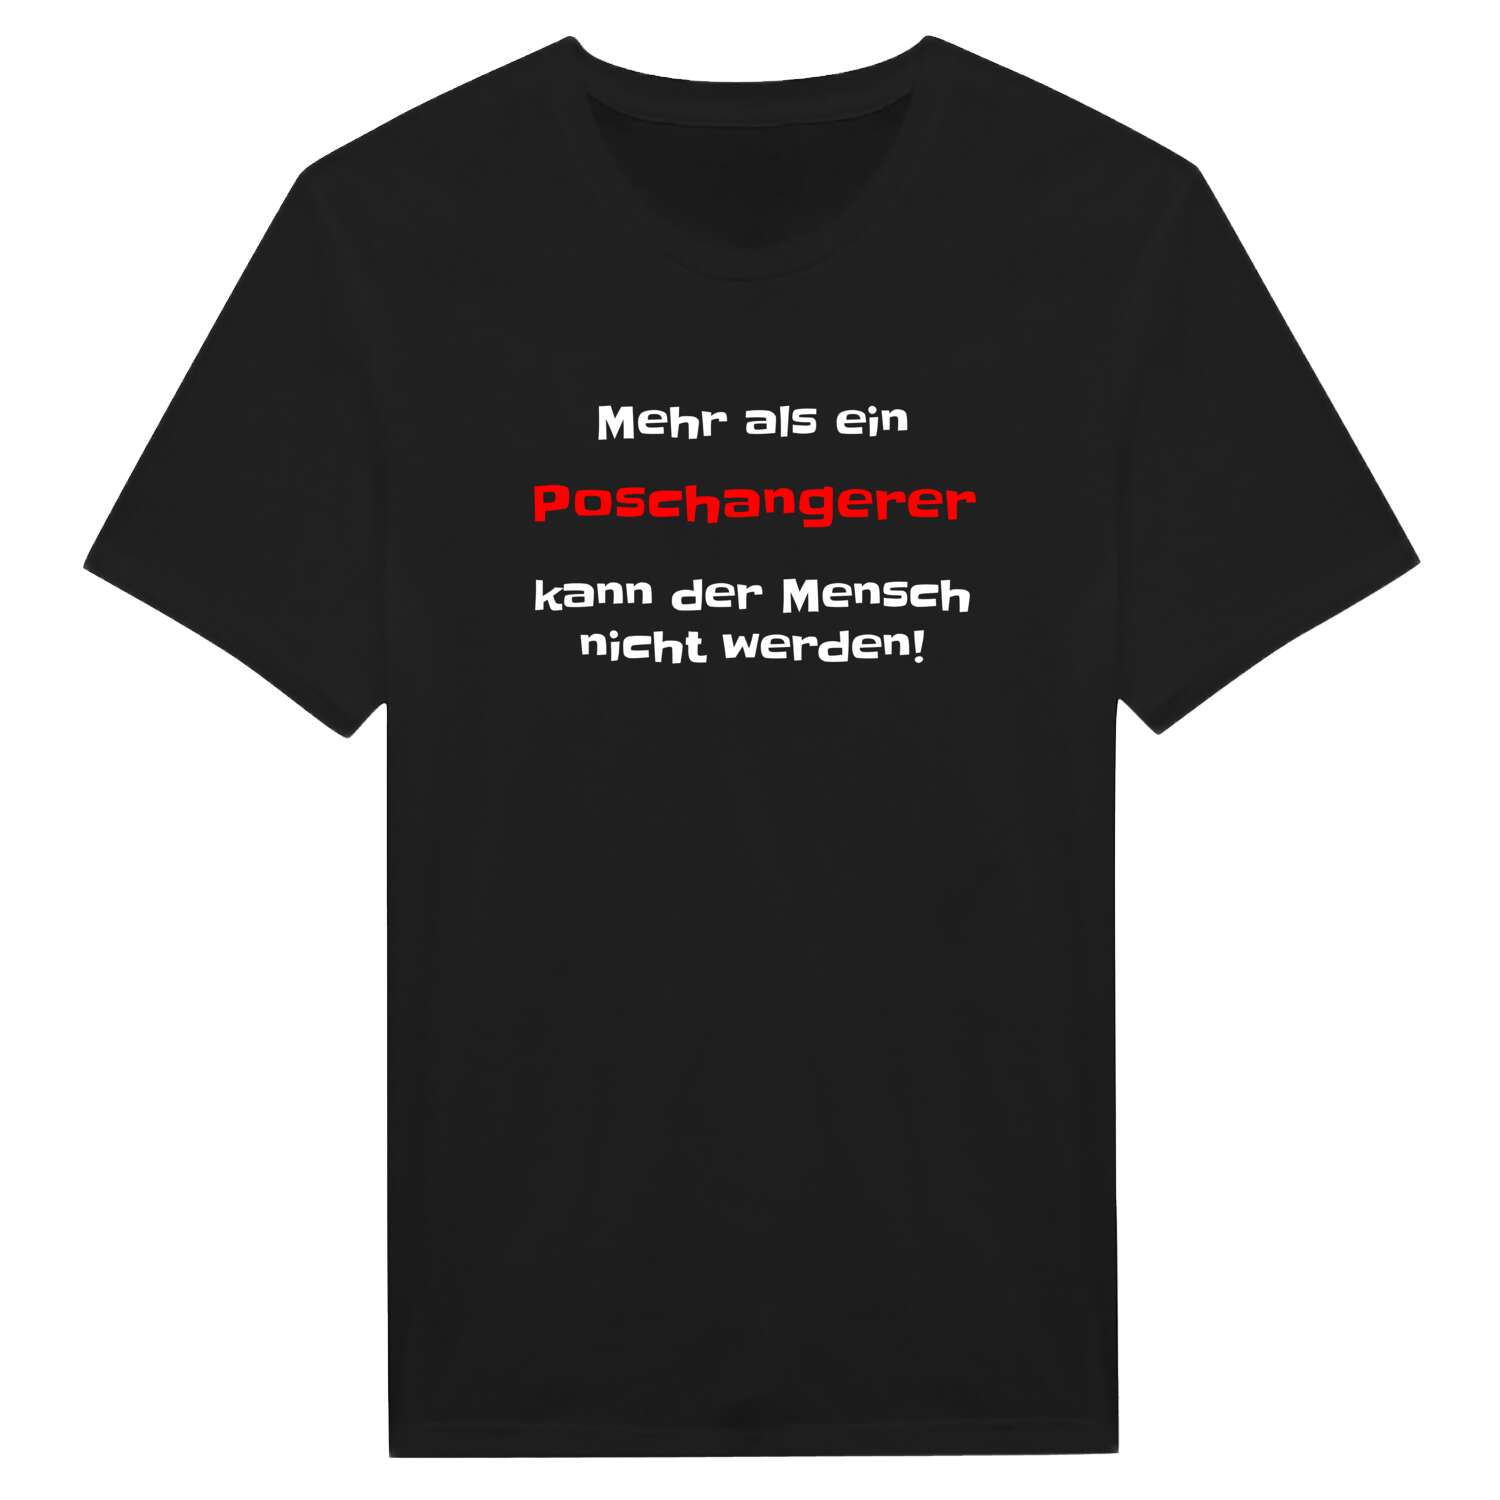 Poschanger T-Shirt »Mehr als ein«